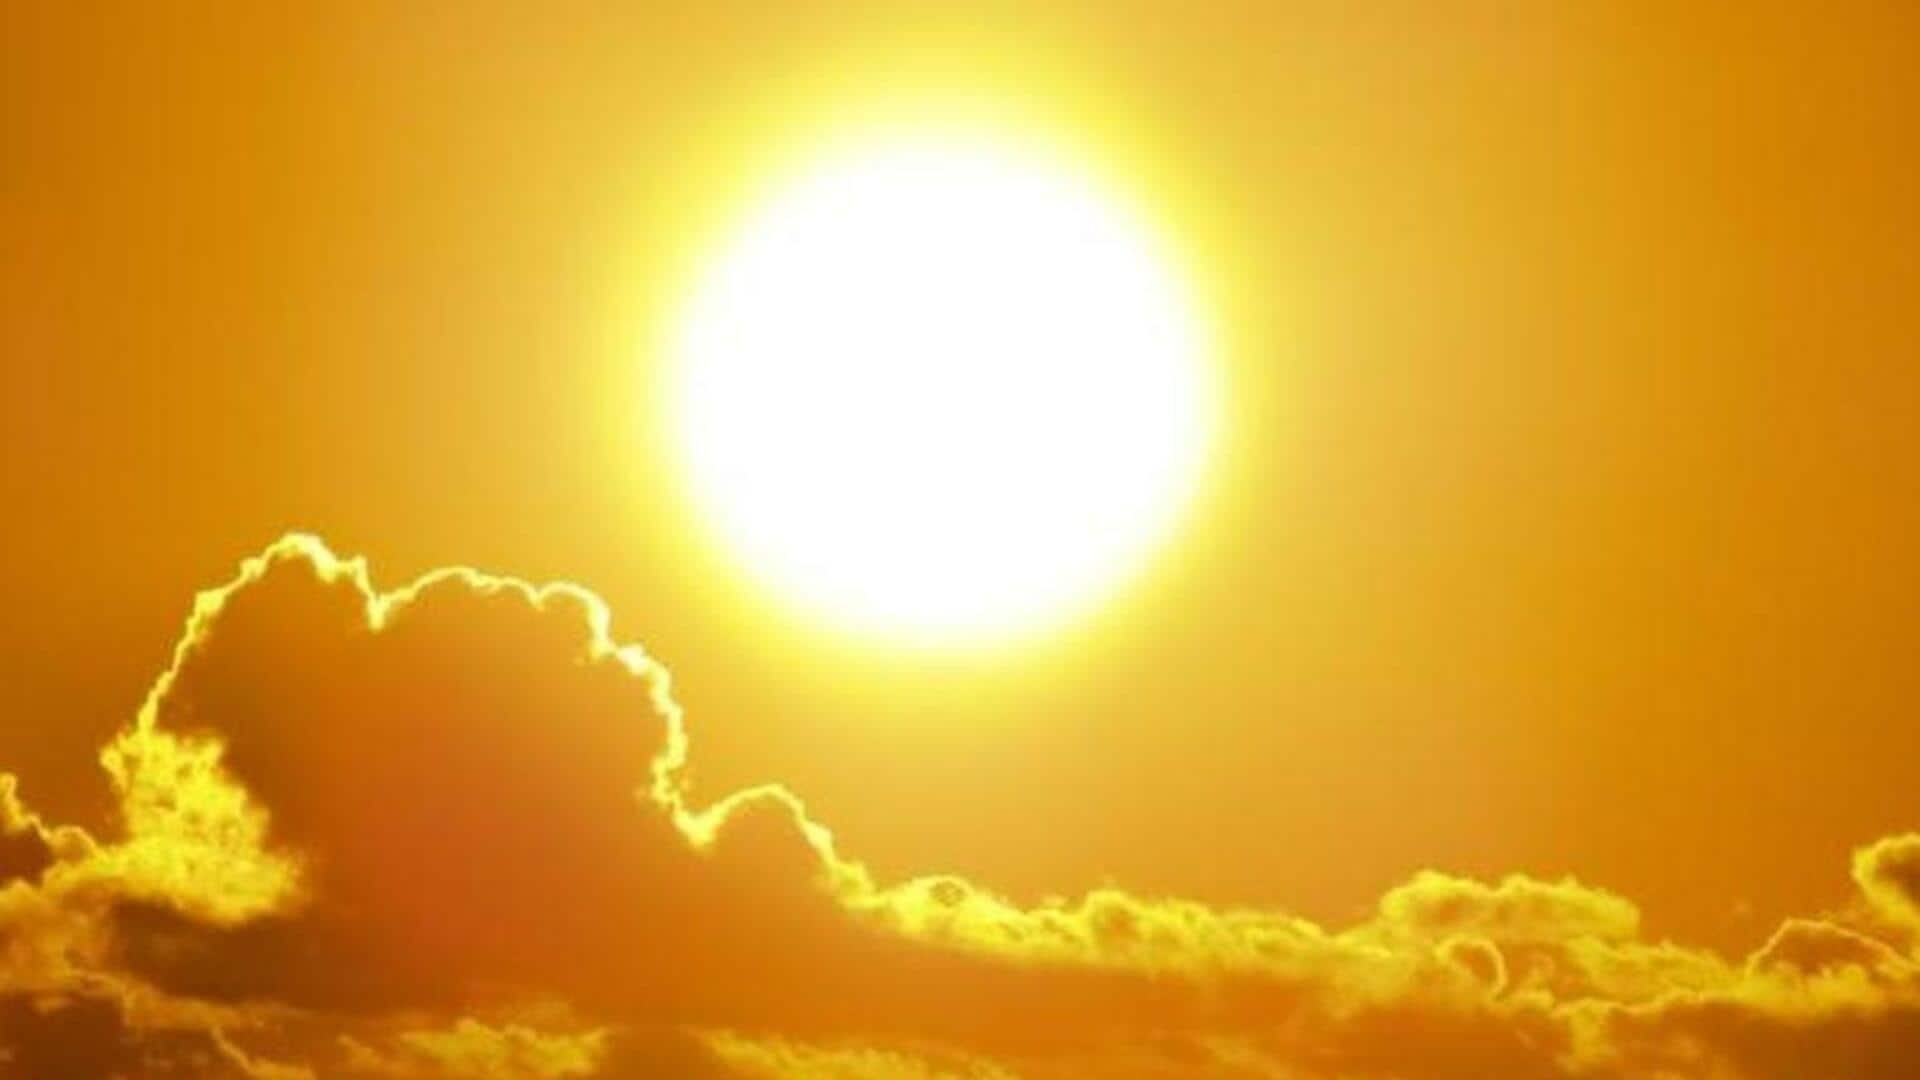 दिल्ली में मौसम का सबसे गर्म दिन रहा रविवार, 34.1 डिग्री सेल्सियस दर्ज किया गया तापमान